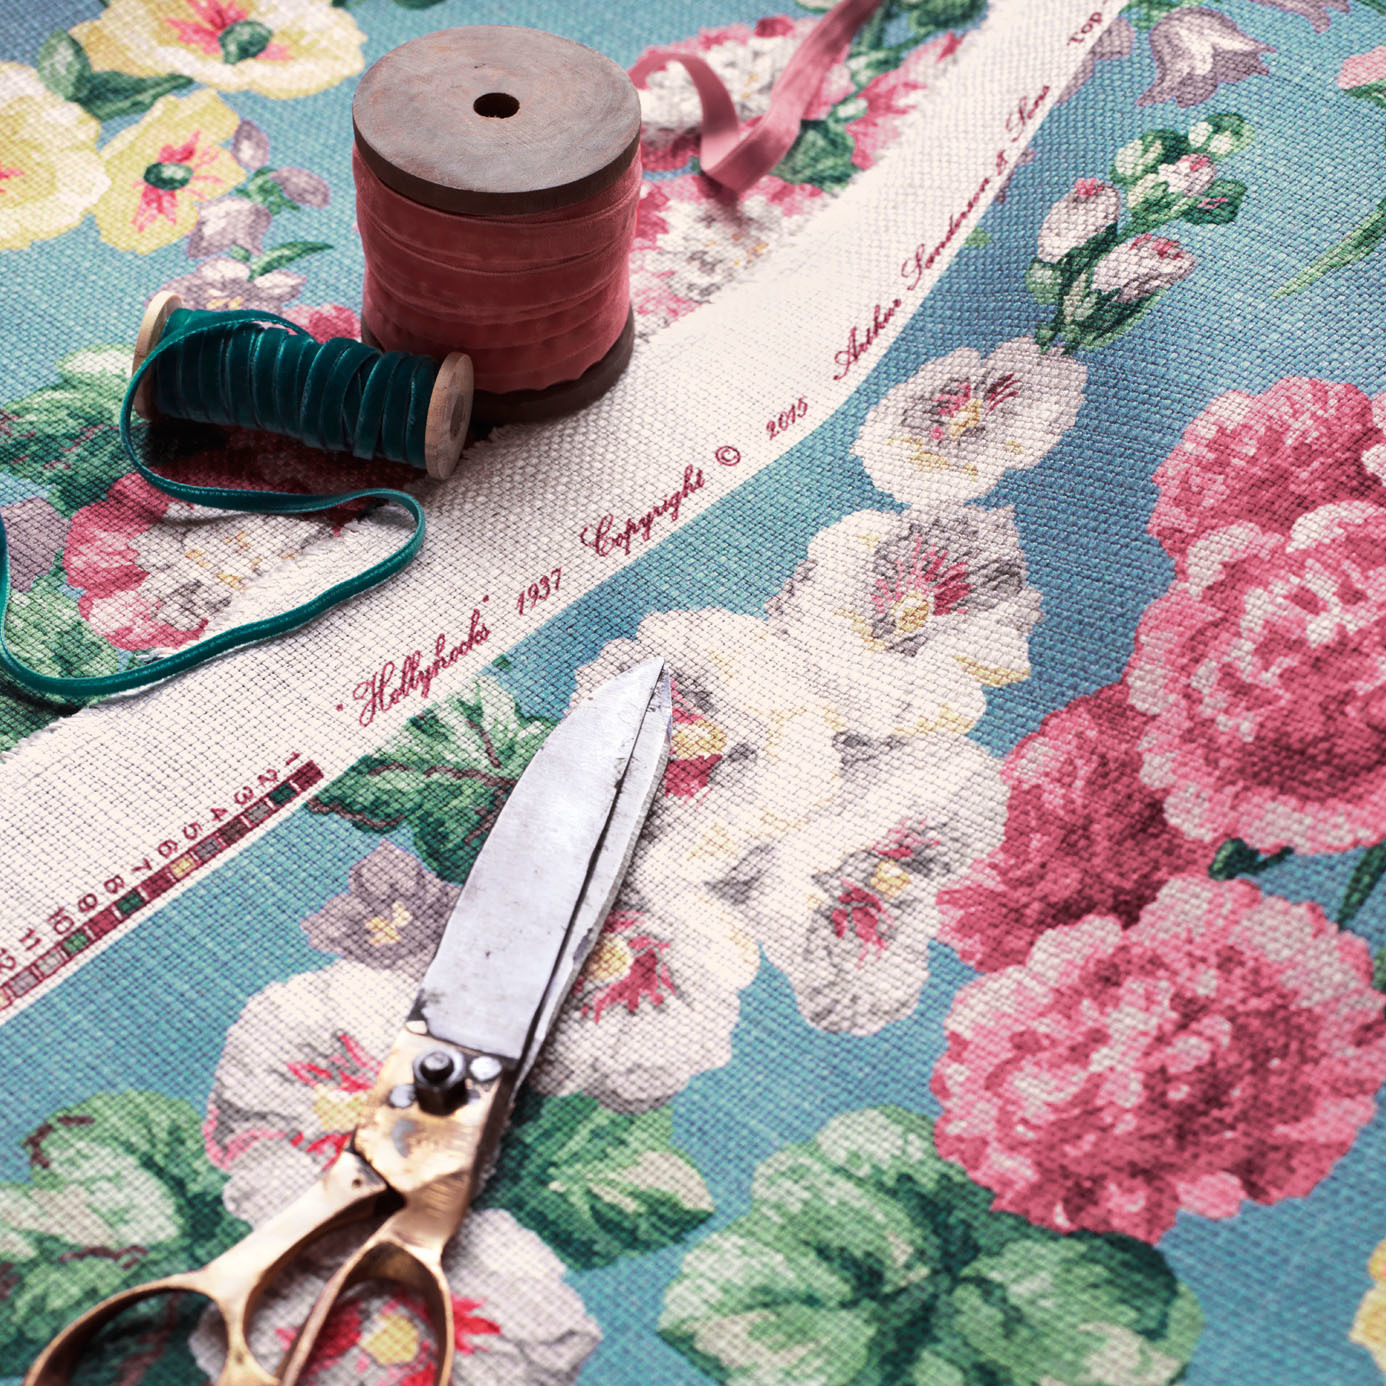 Hollyhocks Teal/Ruby Fabric by SAN